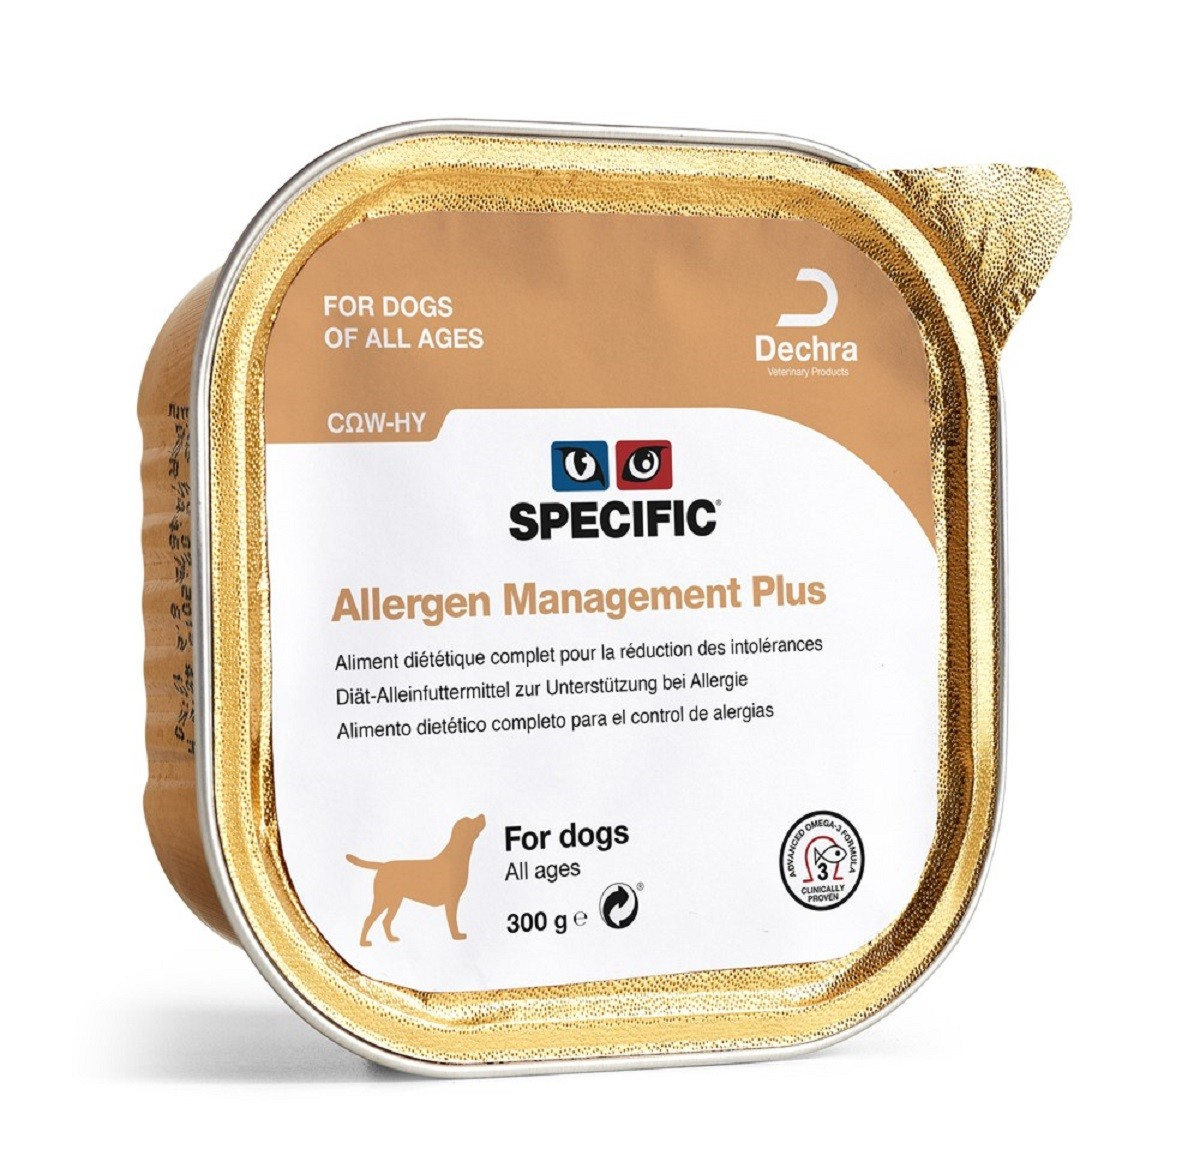 SPECIFIC COW-HY Pack de 6 Patés Allergy Management Plus 300g para Perro y Cachorro Sensible